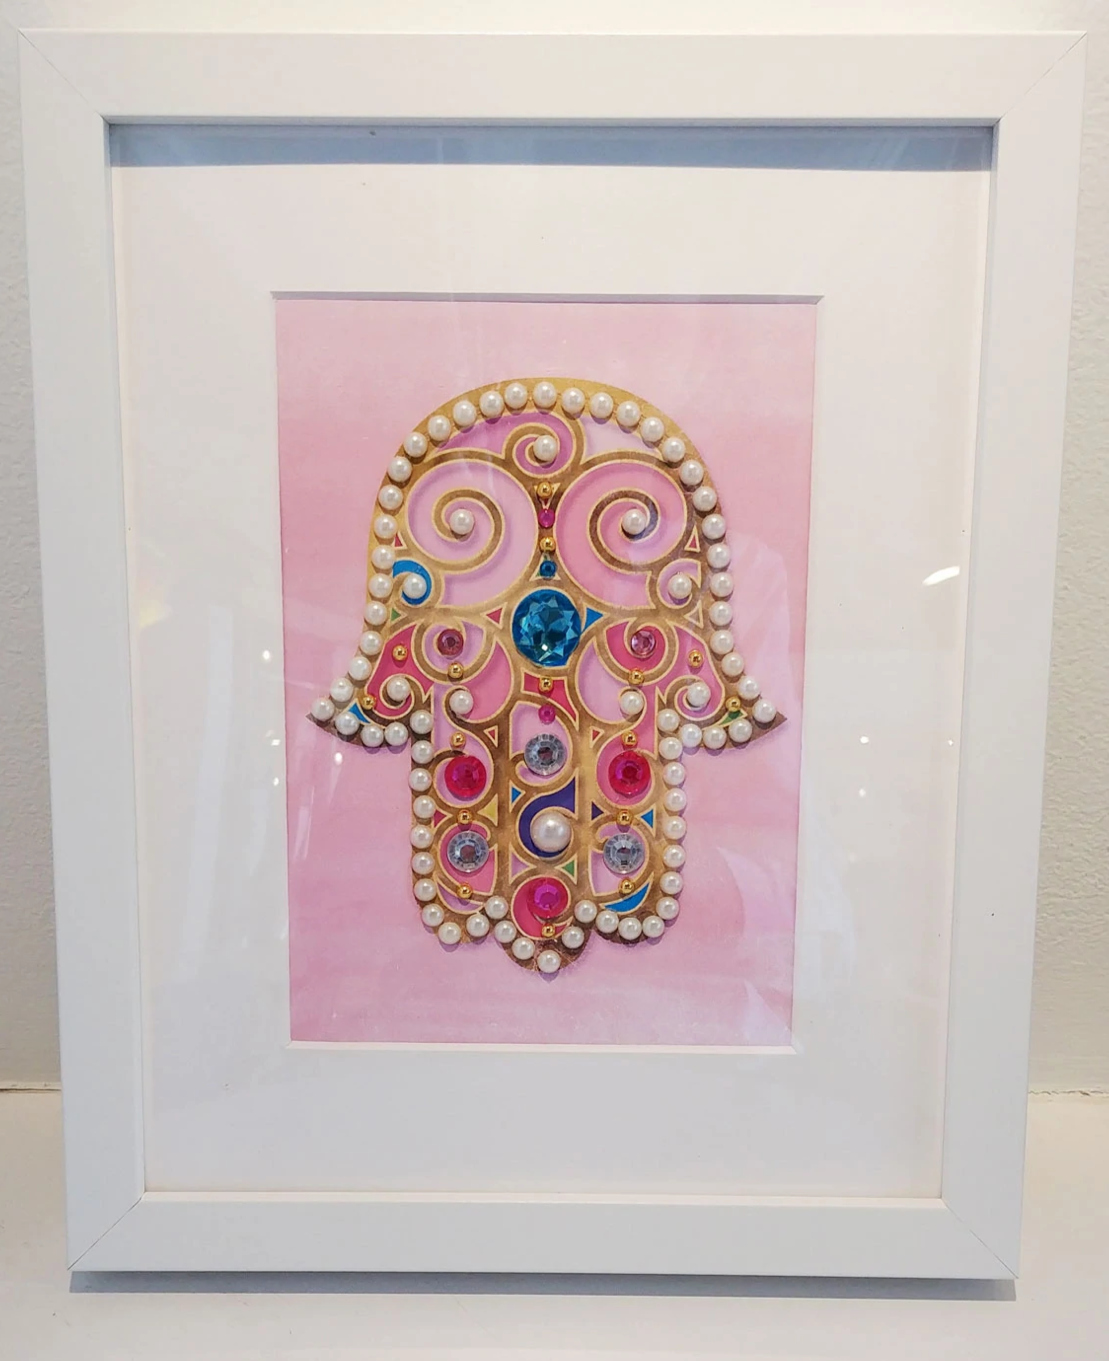 Hamsa Hand Artwork in Pink Design - Framed